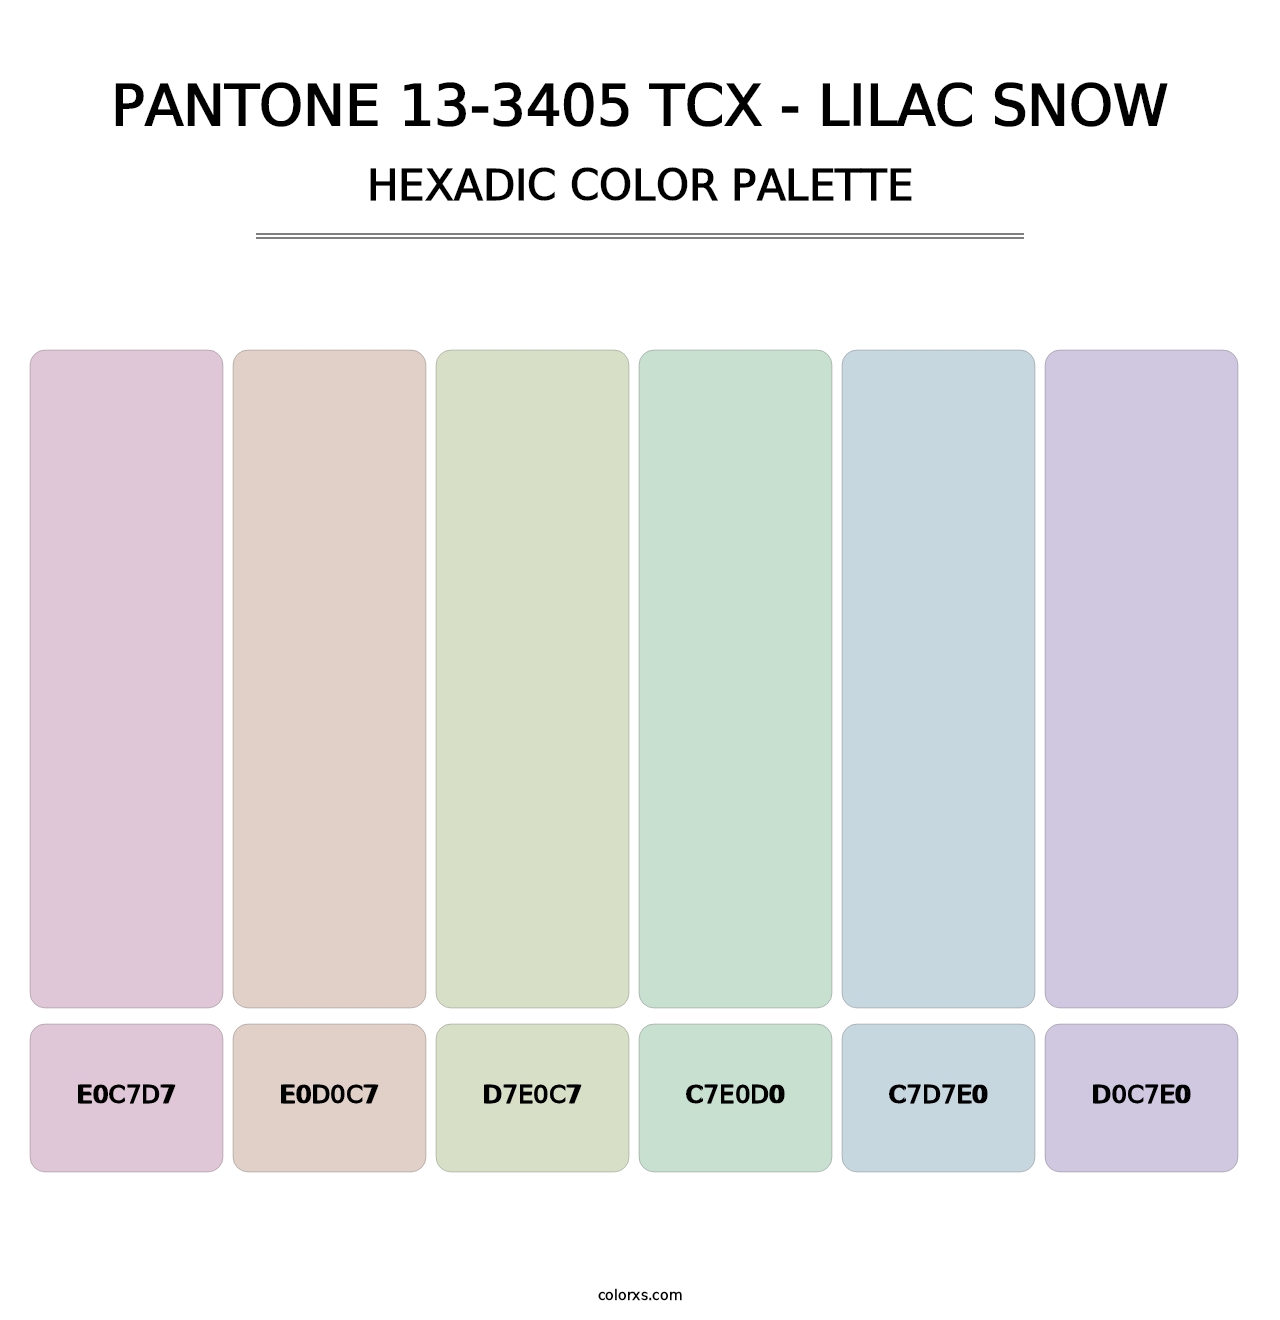 PANTONE 13-3405 TCX - Lilac Snow - Hexadic Color Palette